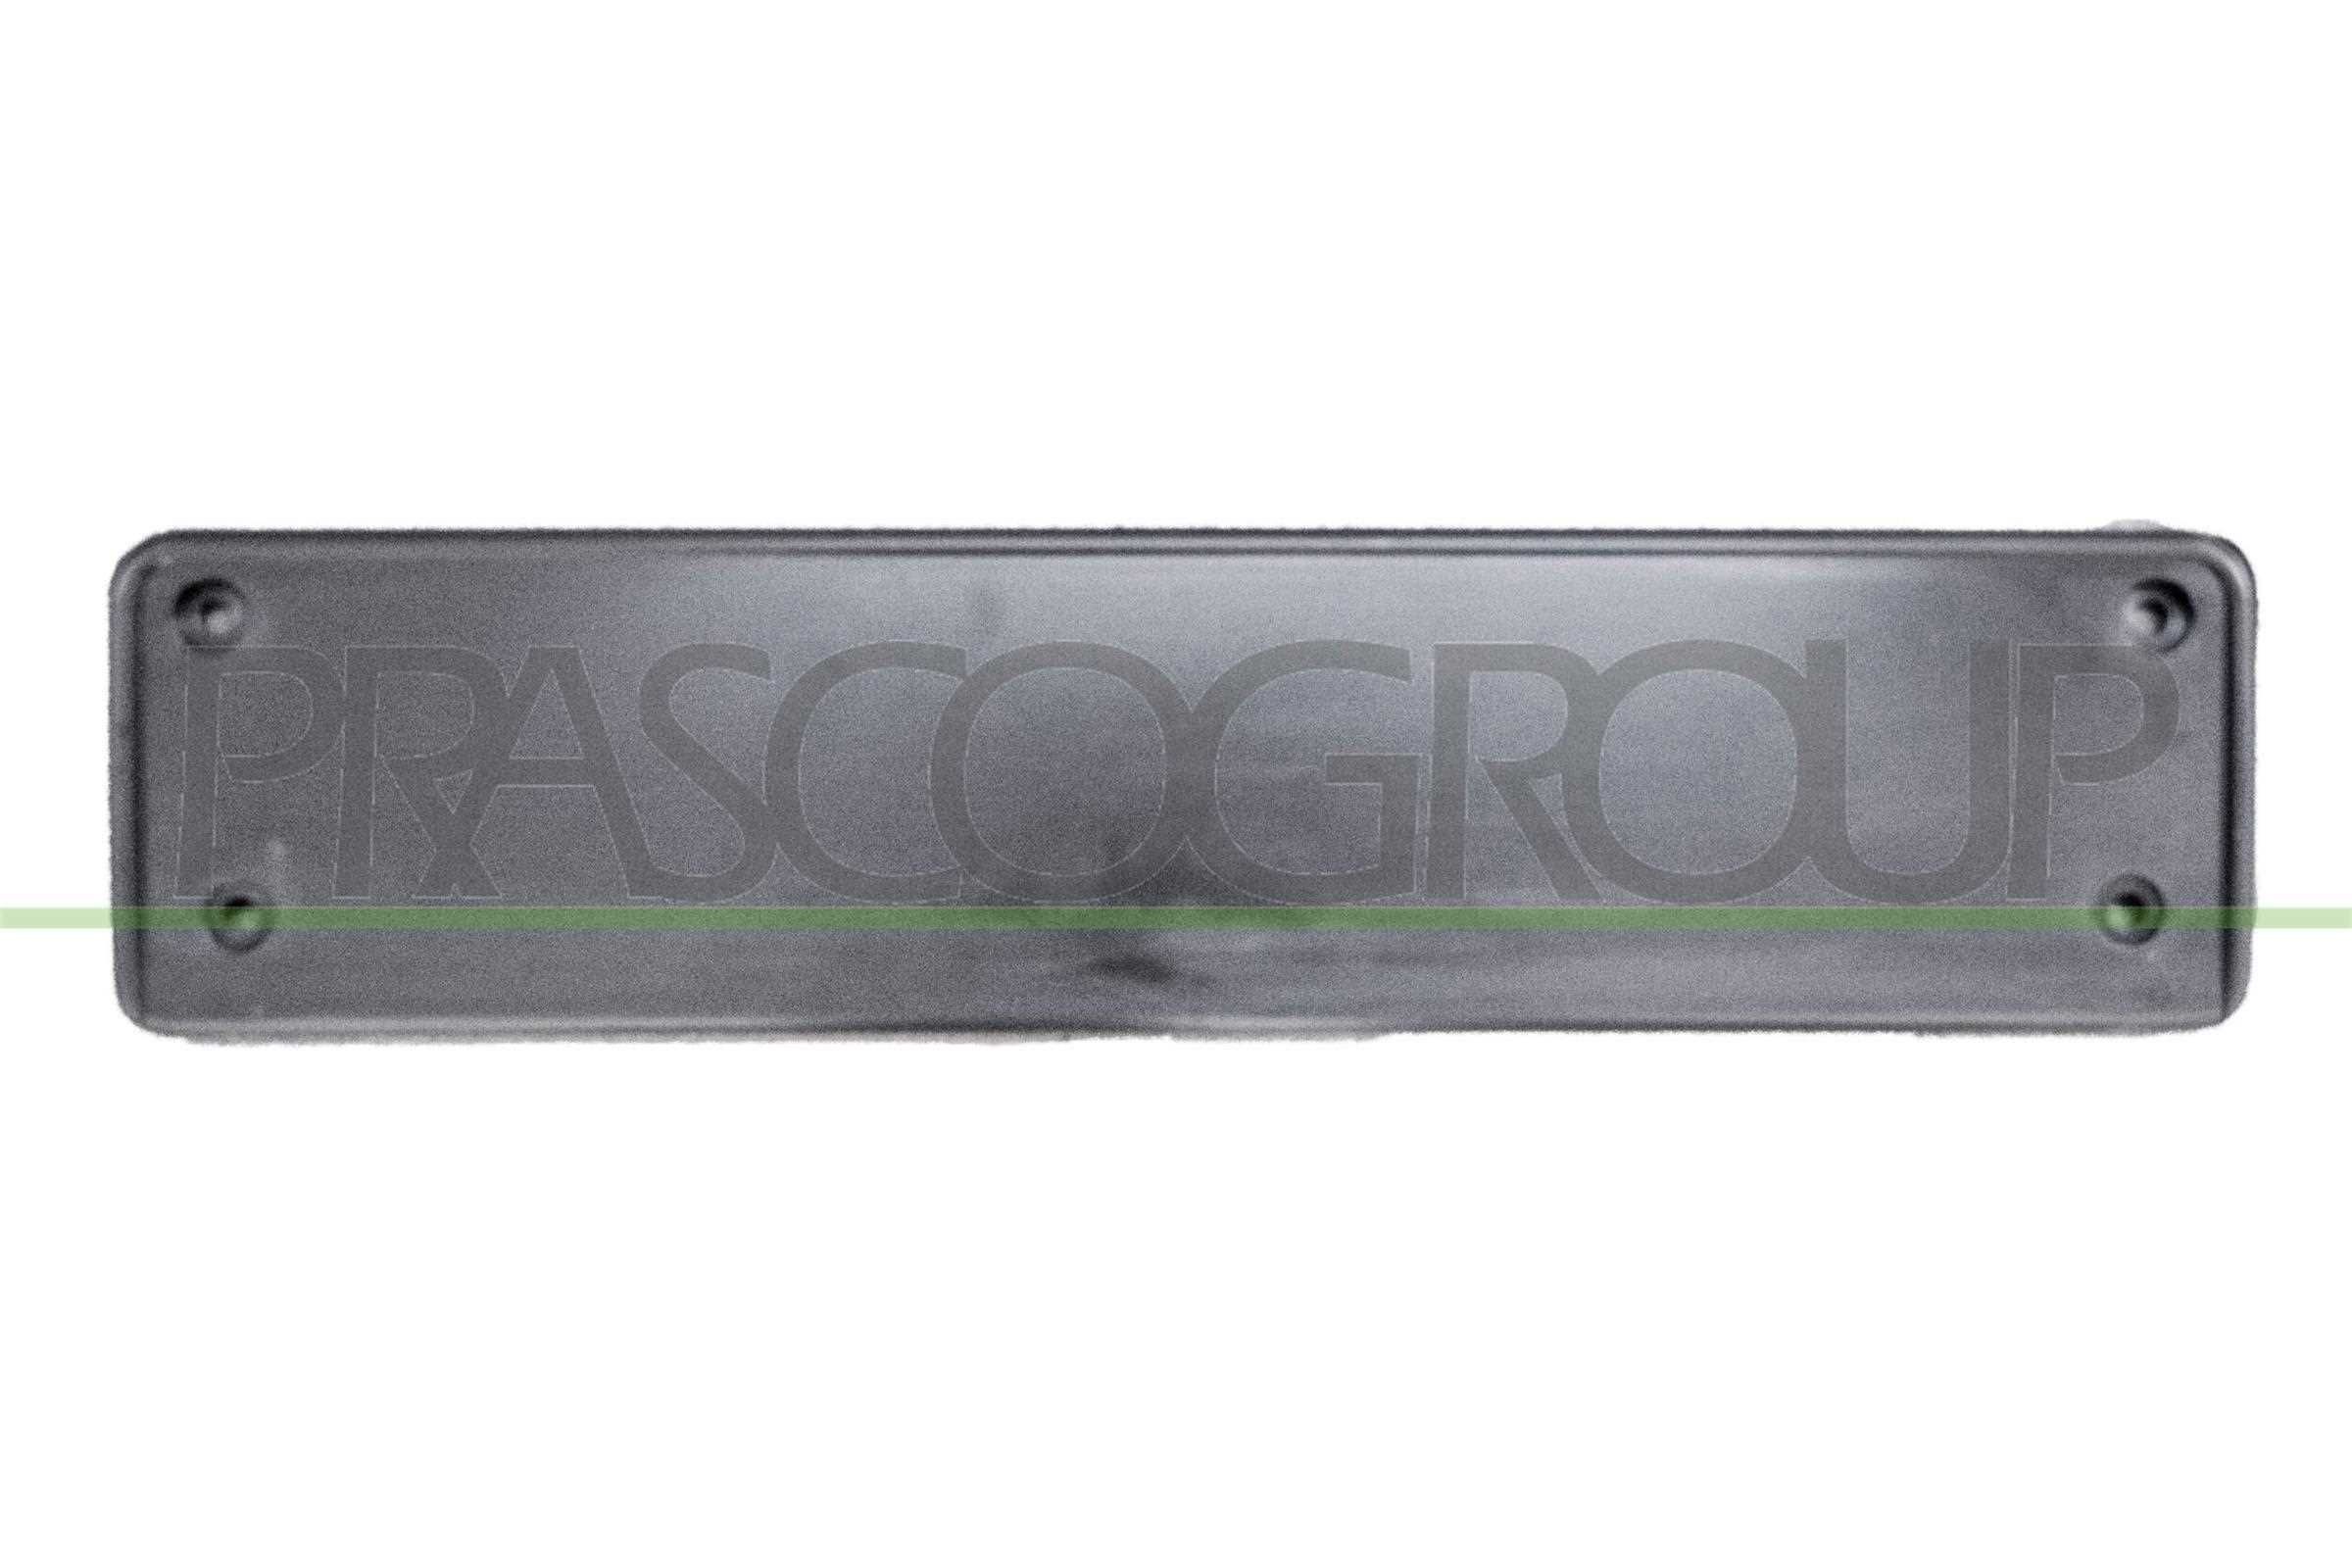 original Passat 3g5 Licence plate holder / bracket PRASCO VG5201539